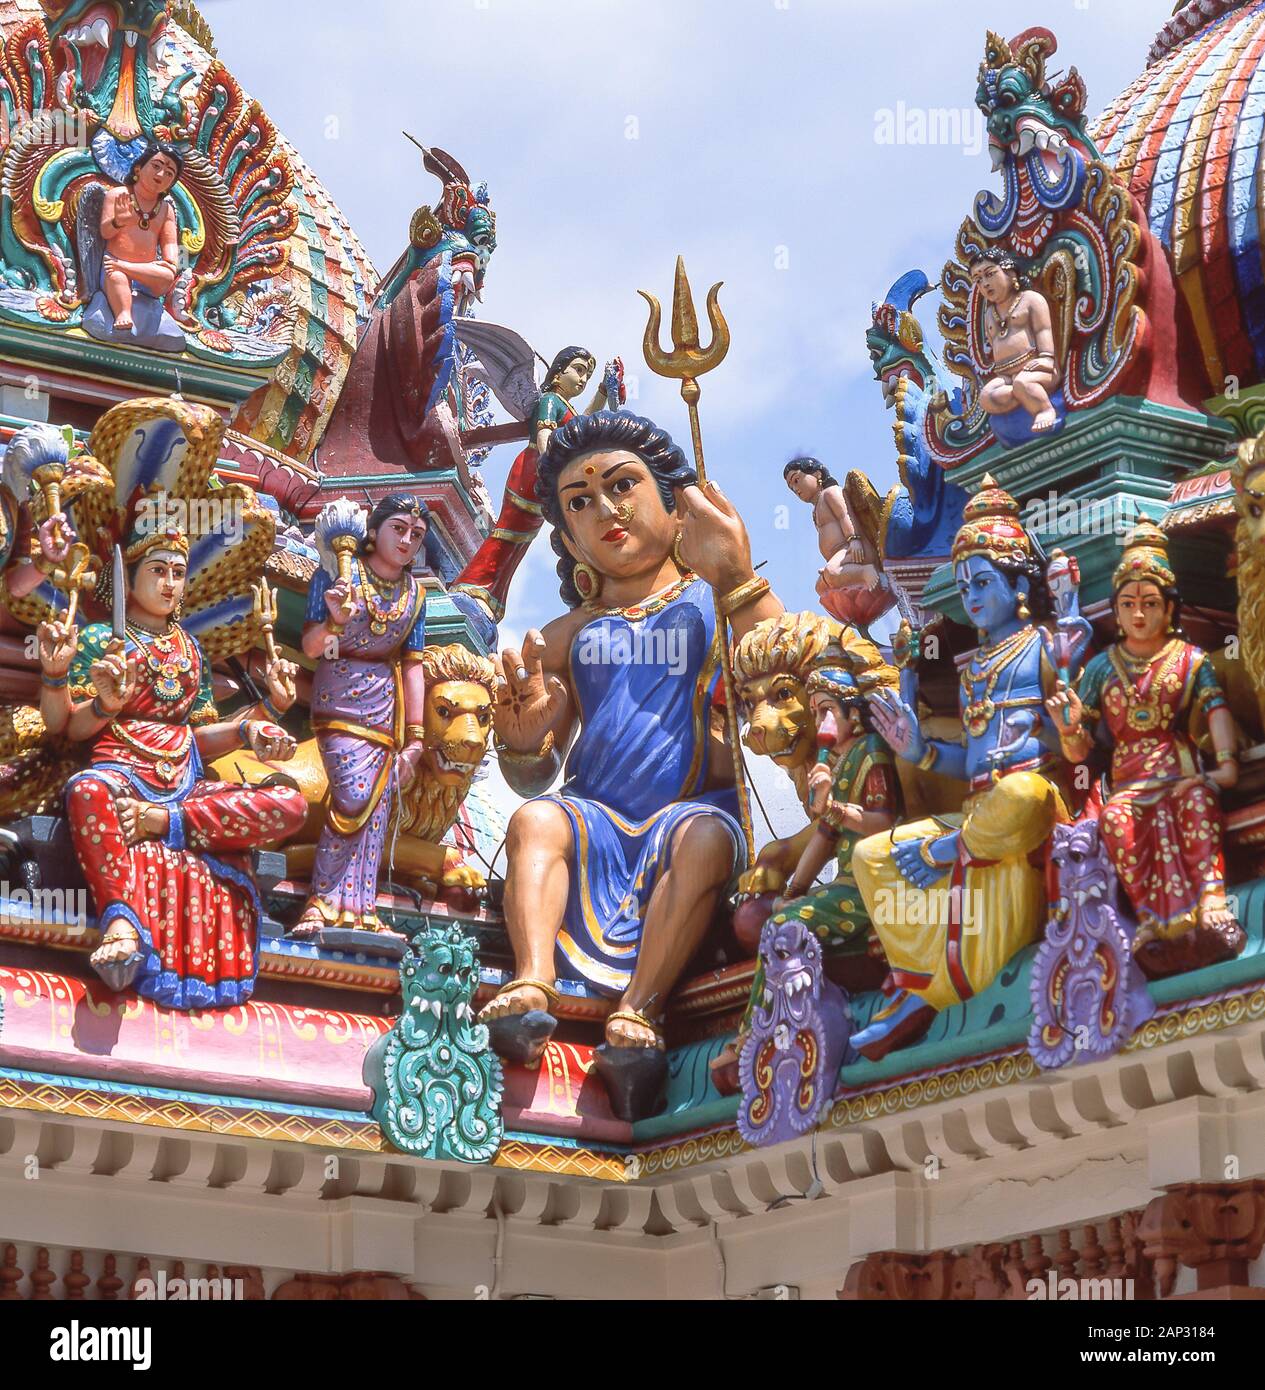 Gottheiten auf Sri Mariamman hinduistischer Tempel, South Bridge Road, Chinatown, Outram District, Central Area, Singapur Insel (Pulau Ujong), Singapur dargestellt Stockfoto